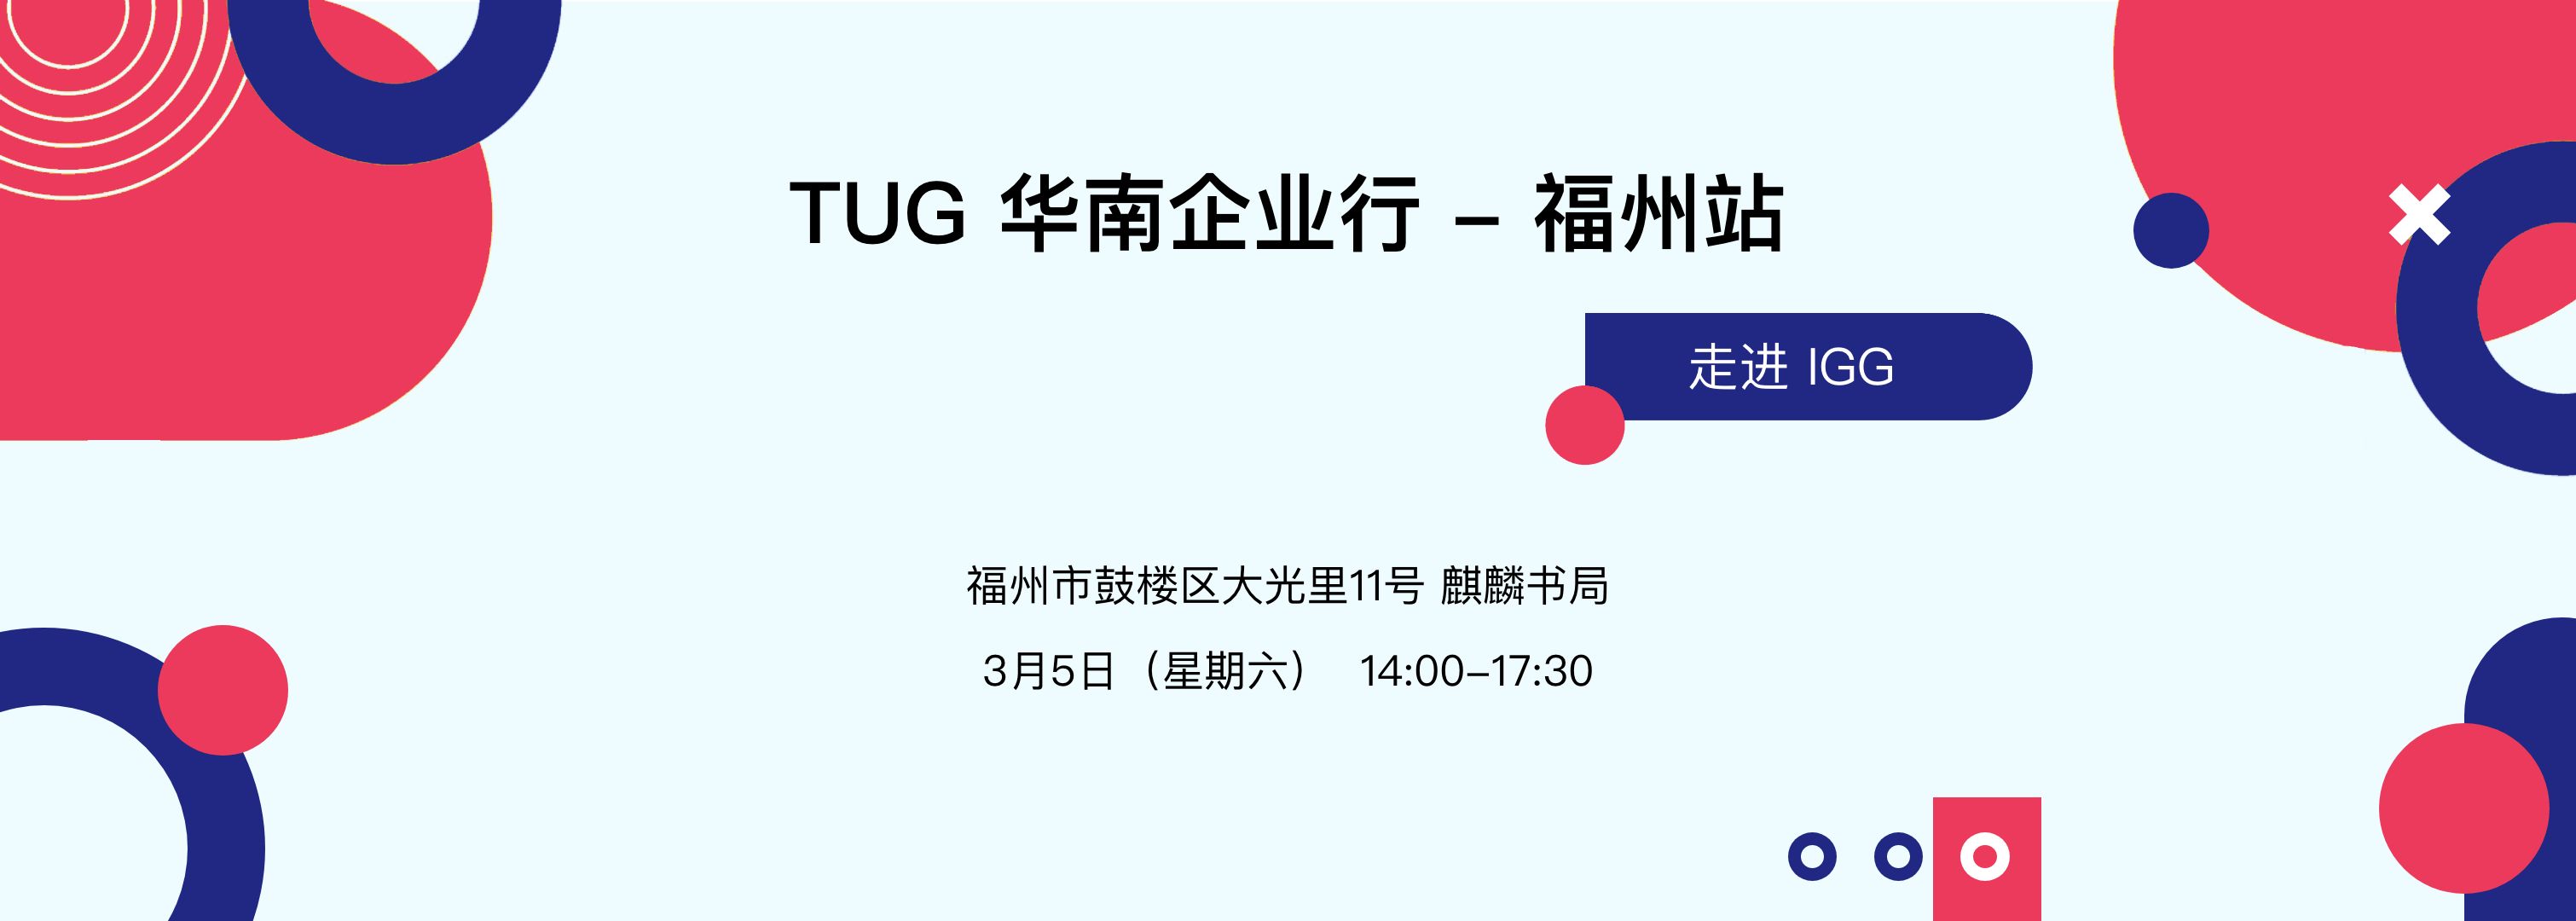 【活动回顾】TUG 企业行福州站 - 走进 IGG